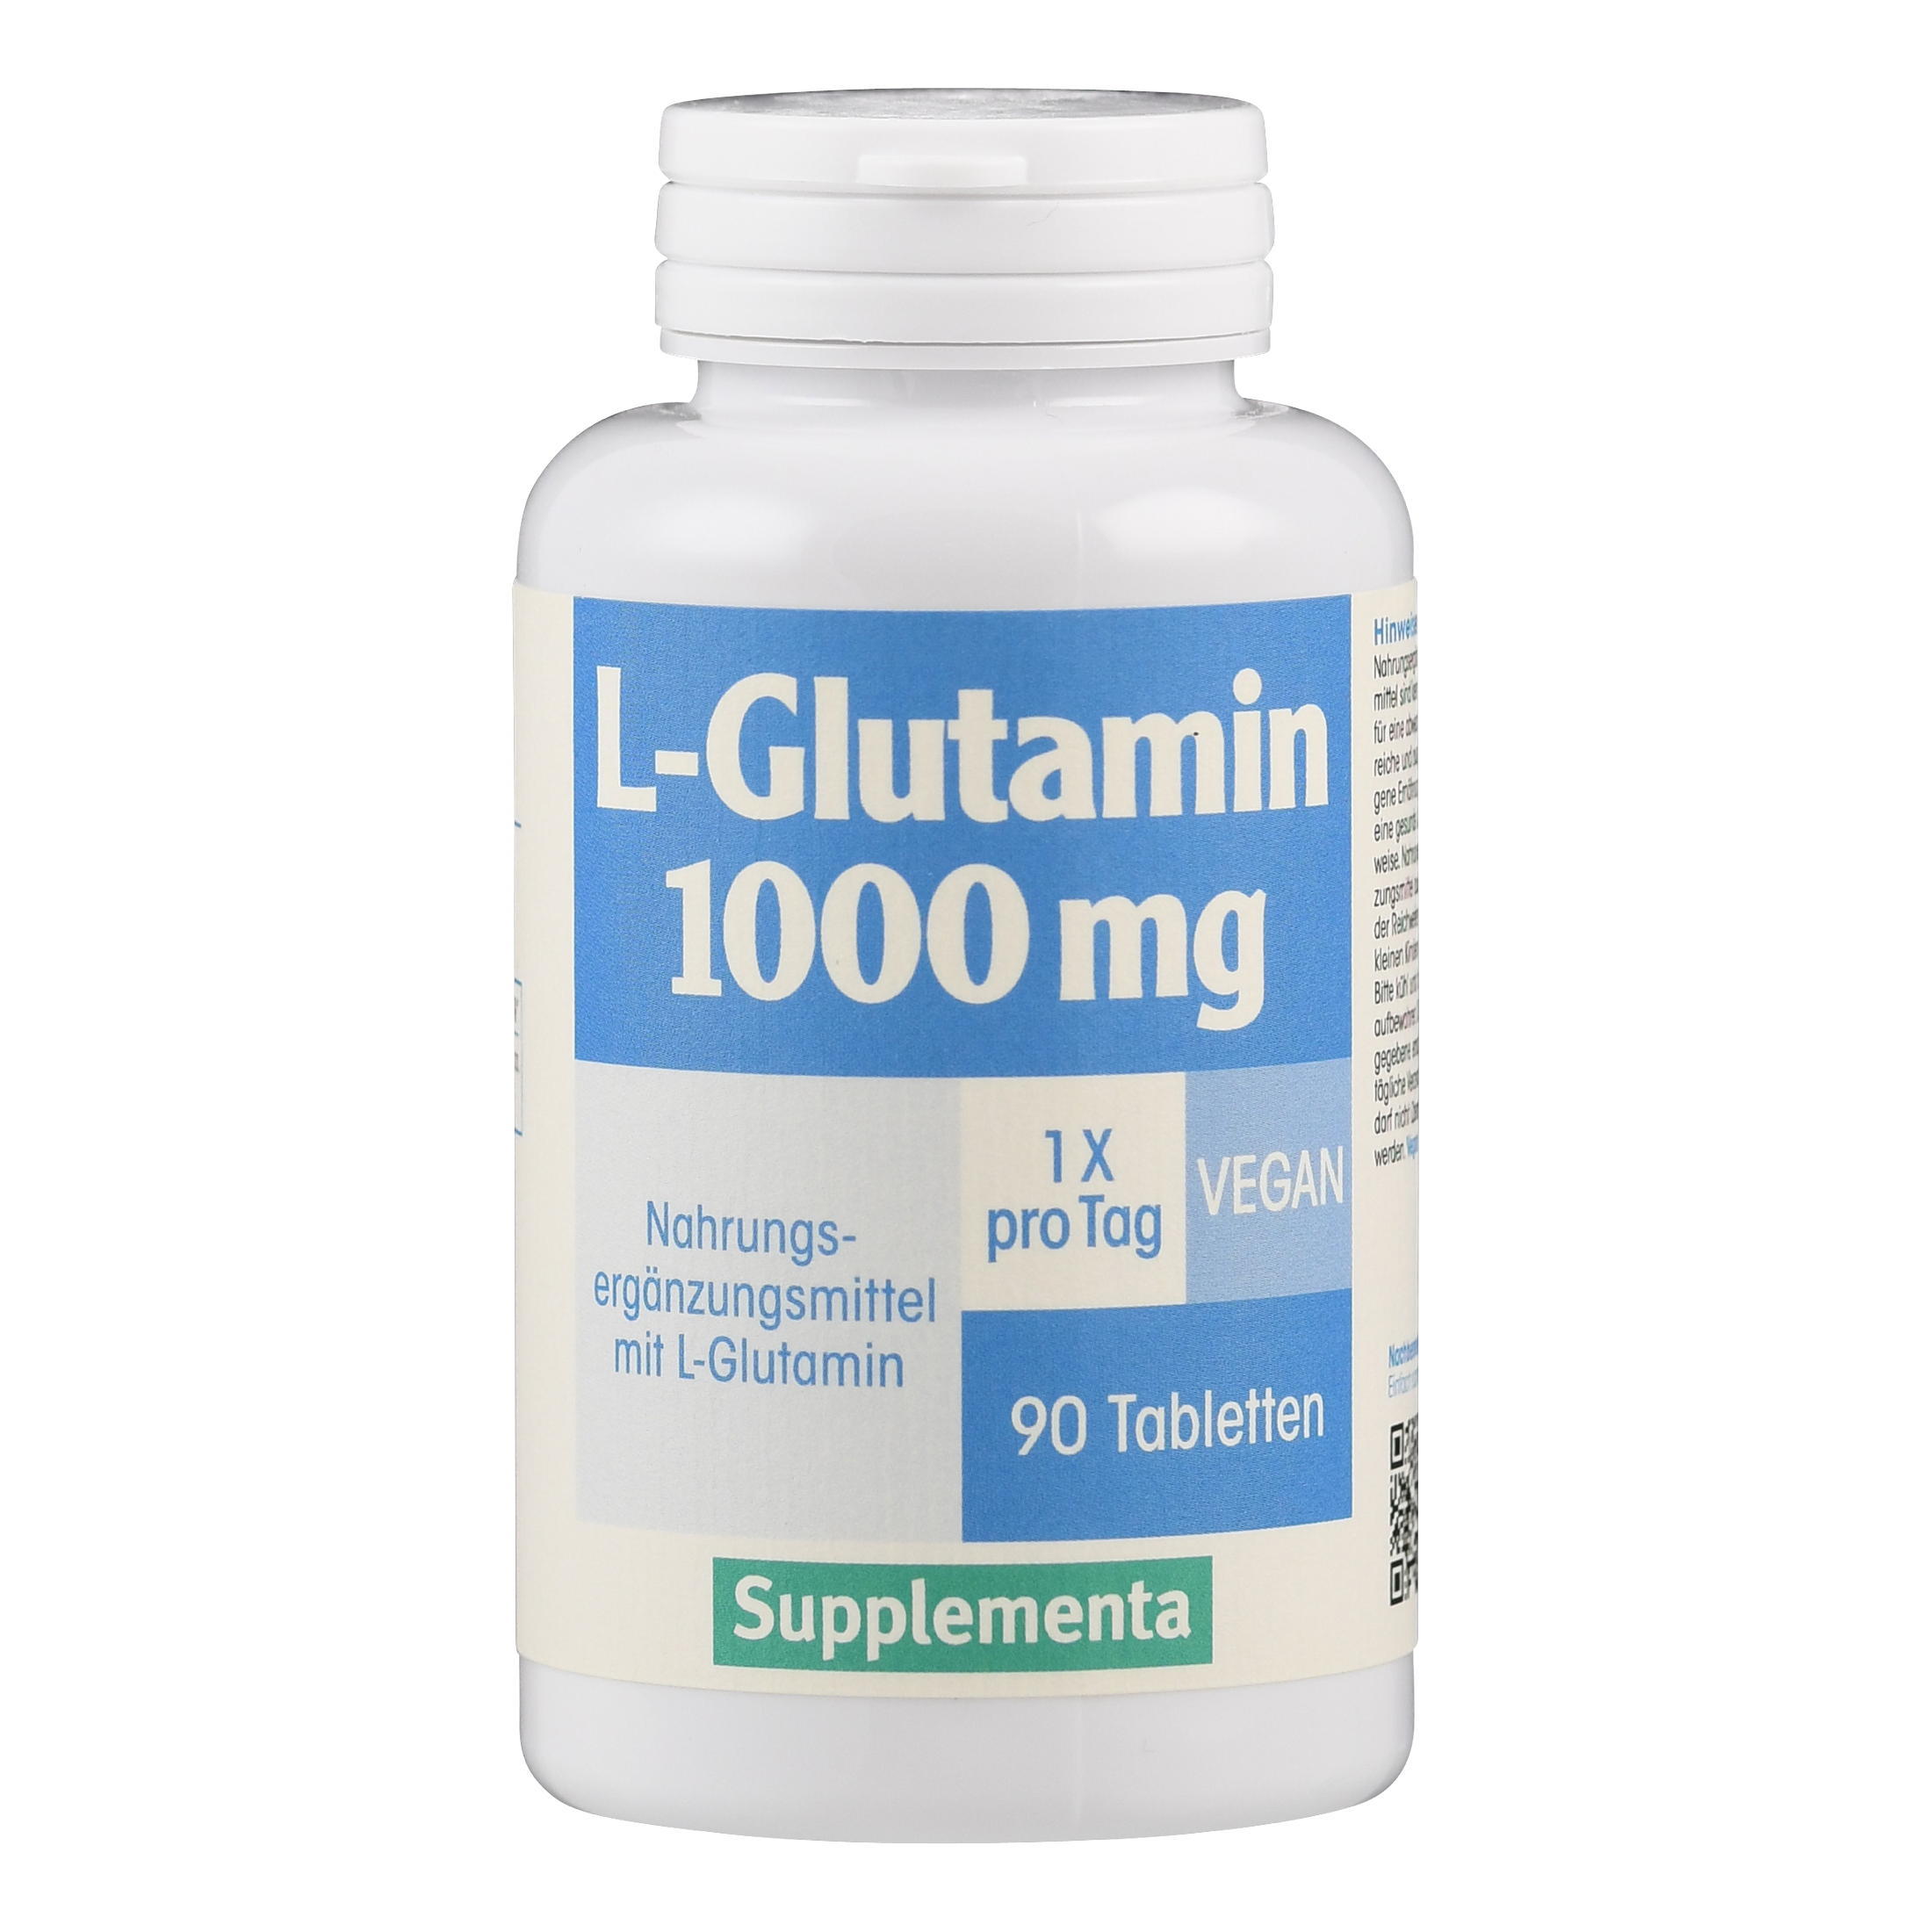 L-Glutamin 1000 mg von Supplementa.